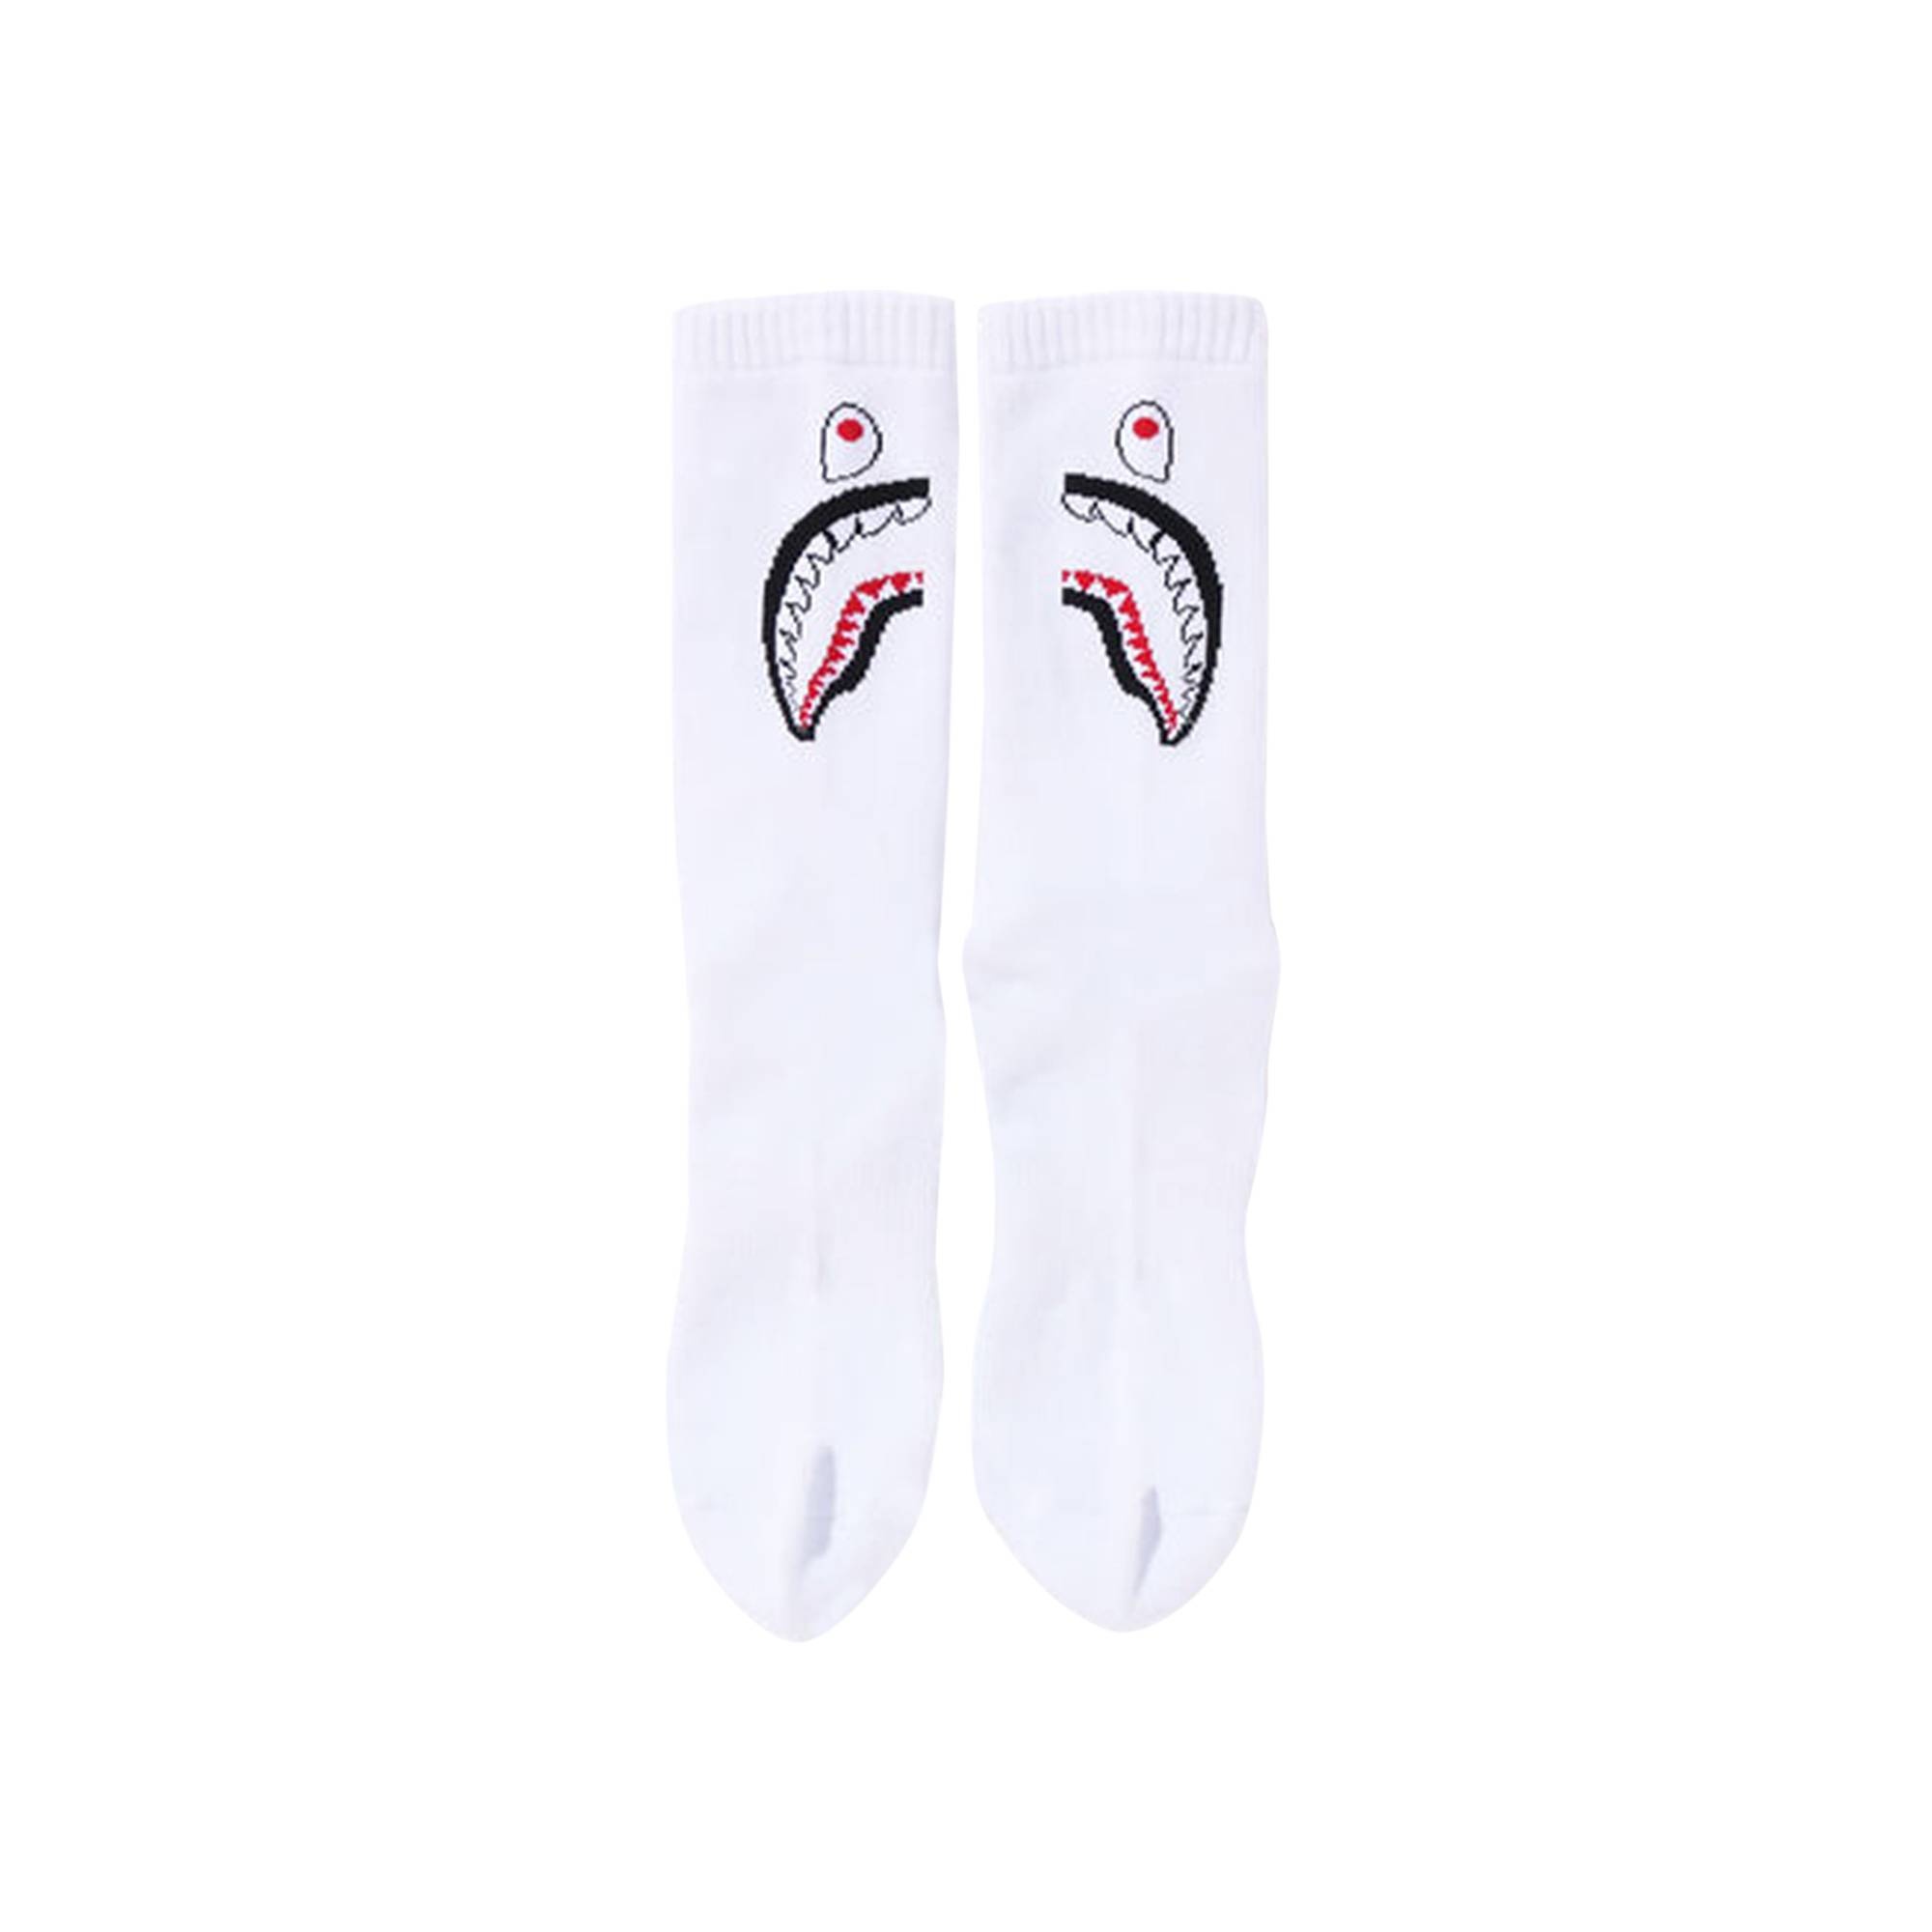 BAPE Shark Socks 'White' - 2